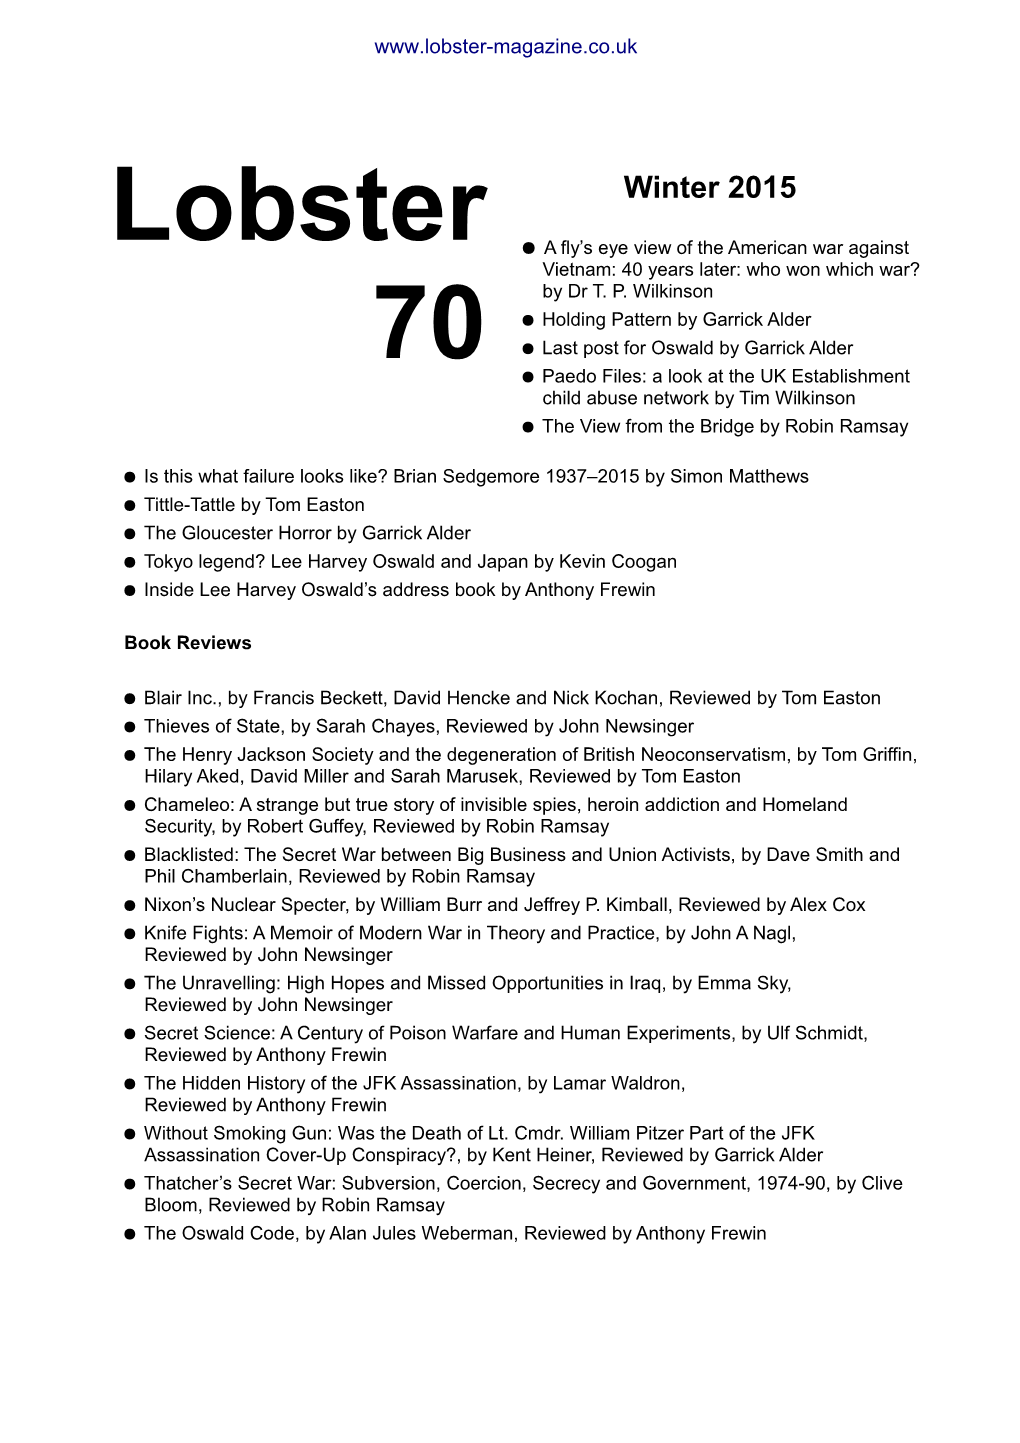 Lobster 70 Winter 2015